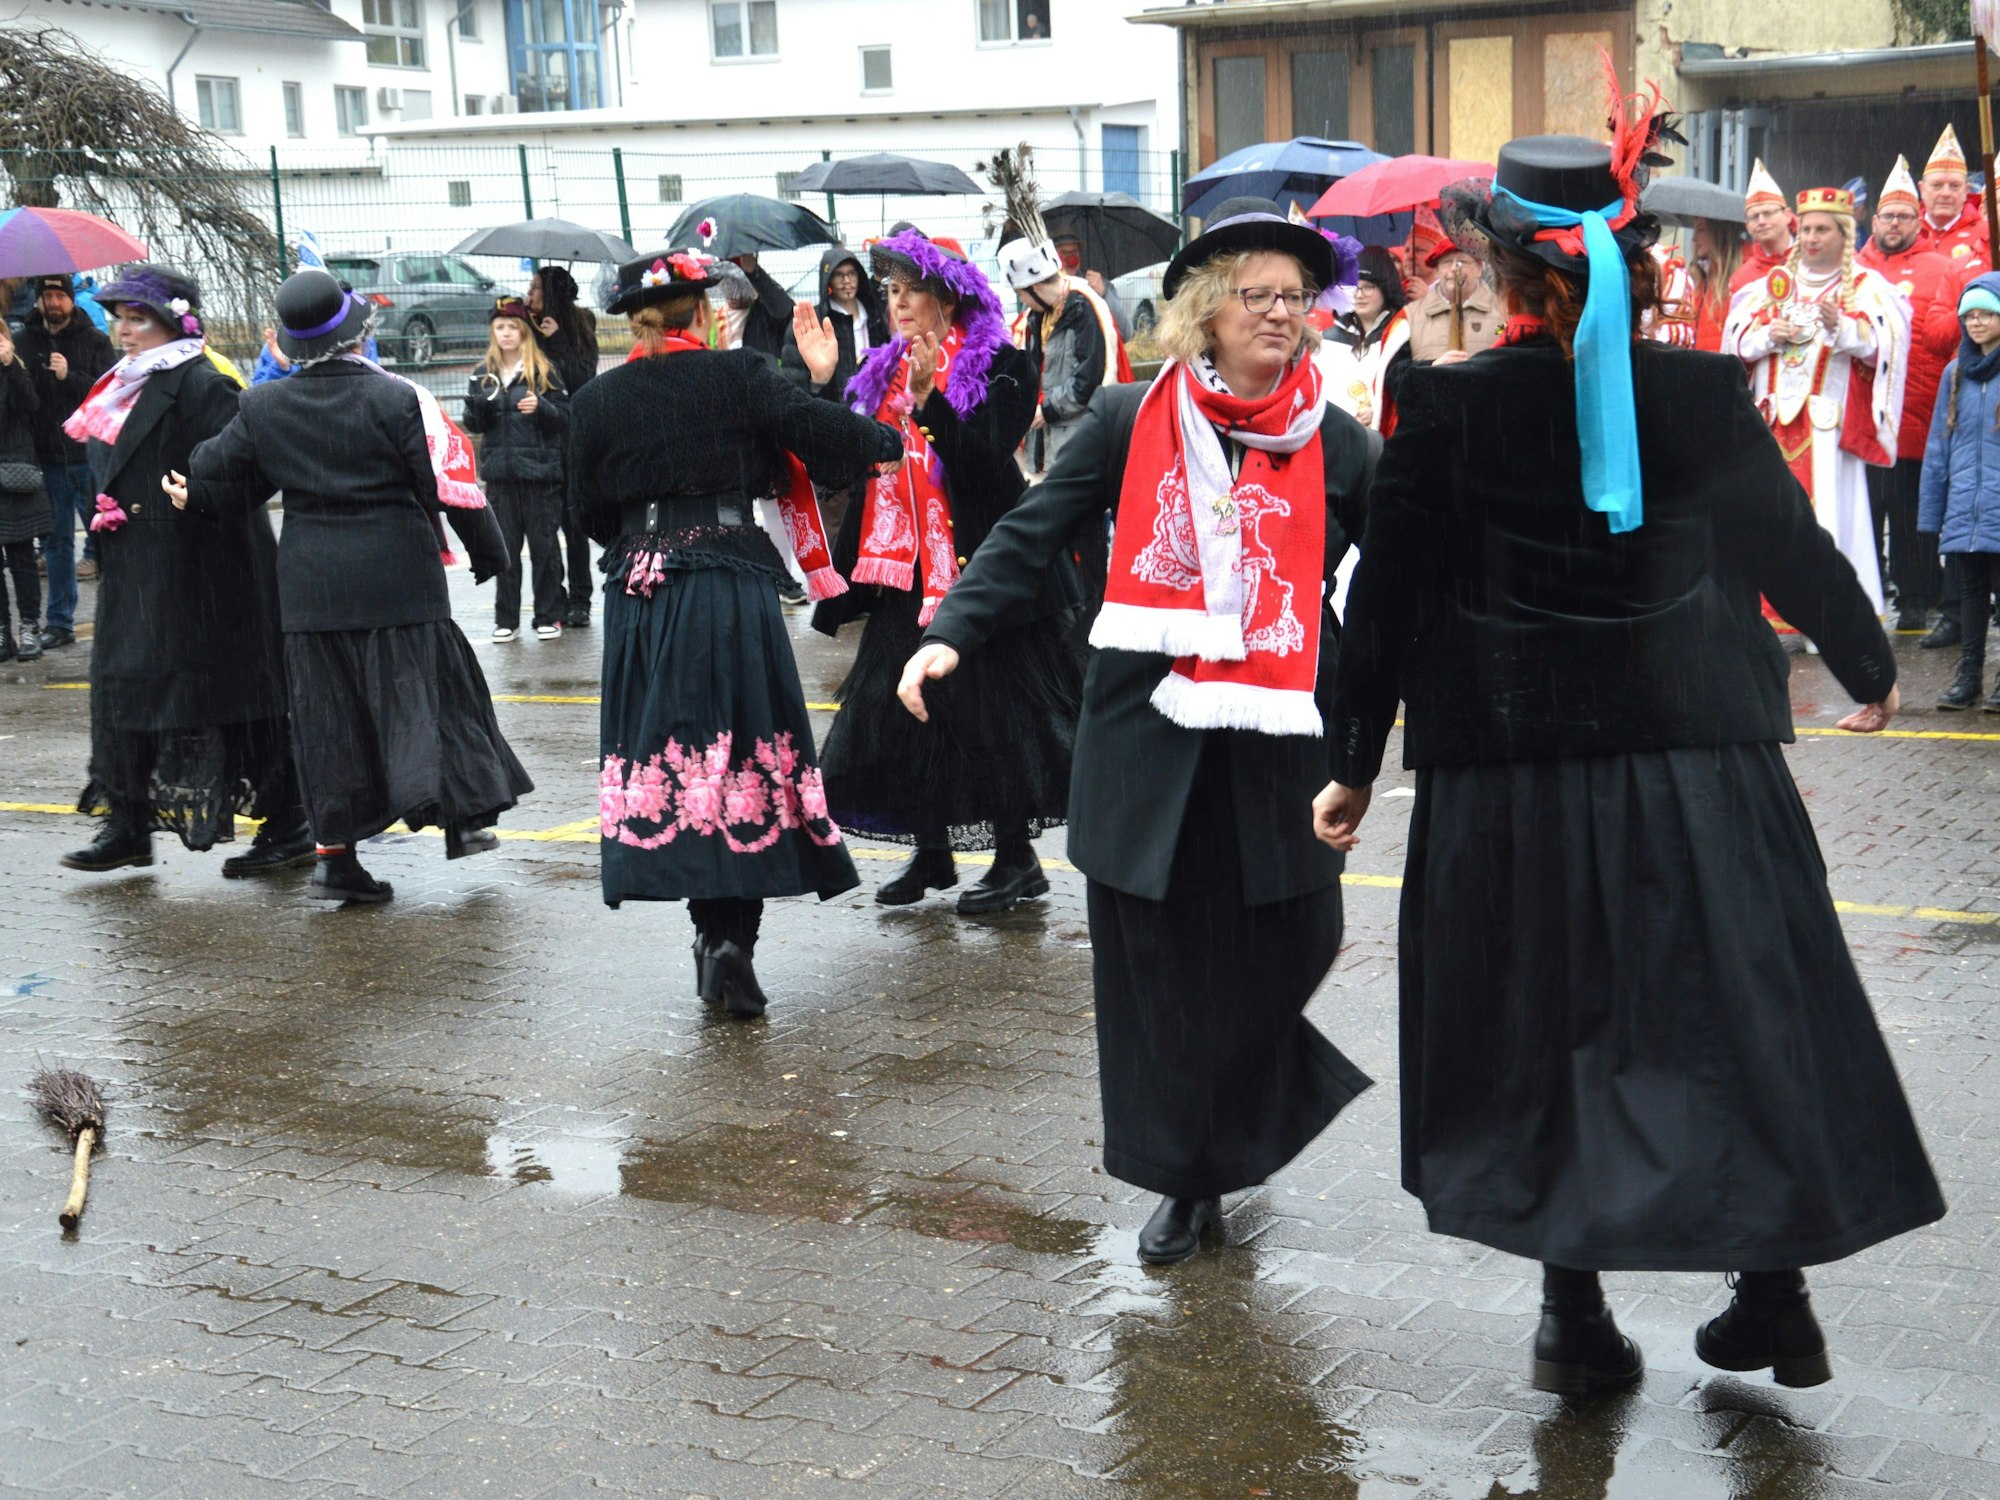 In schwarzen Kleidern und mit bunten Schals gekleidete Frauen tanzen.